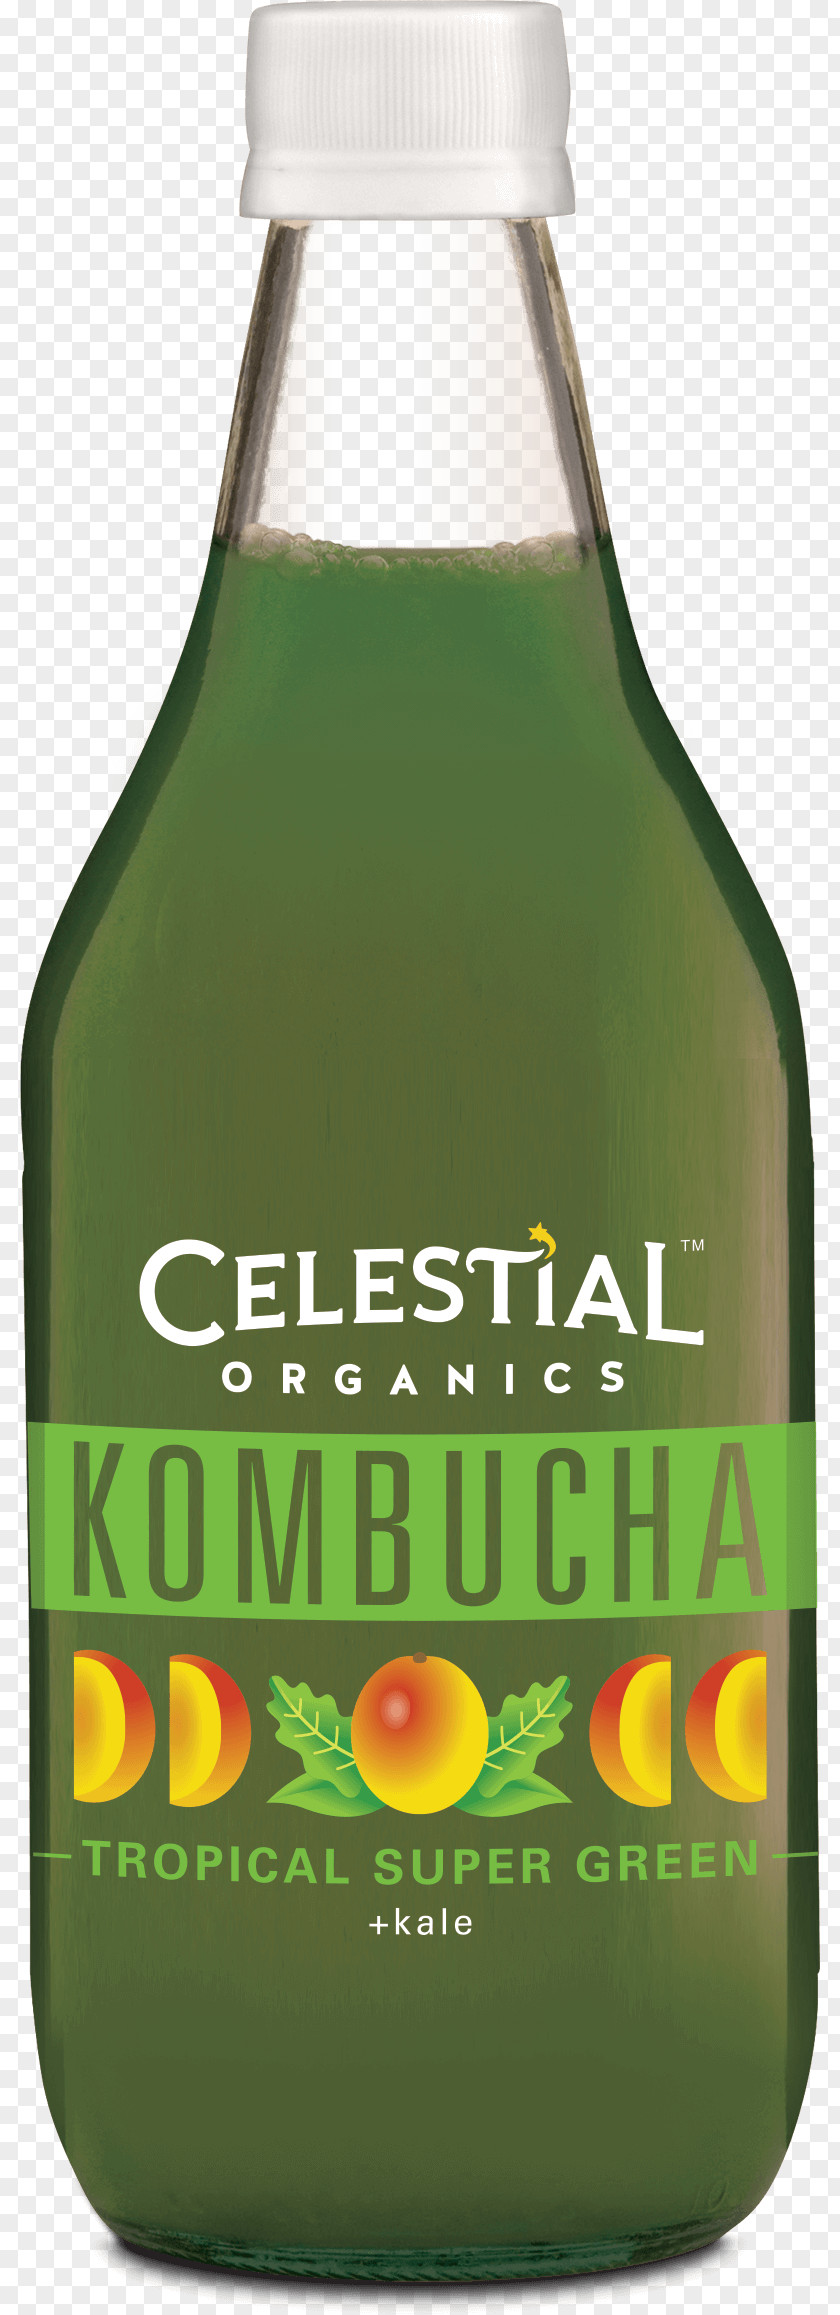 Celestial Seasonings Liqueur Glass Bottle Beer PNG